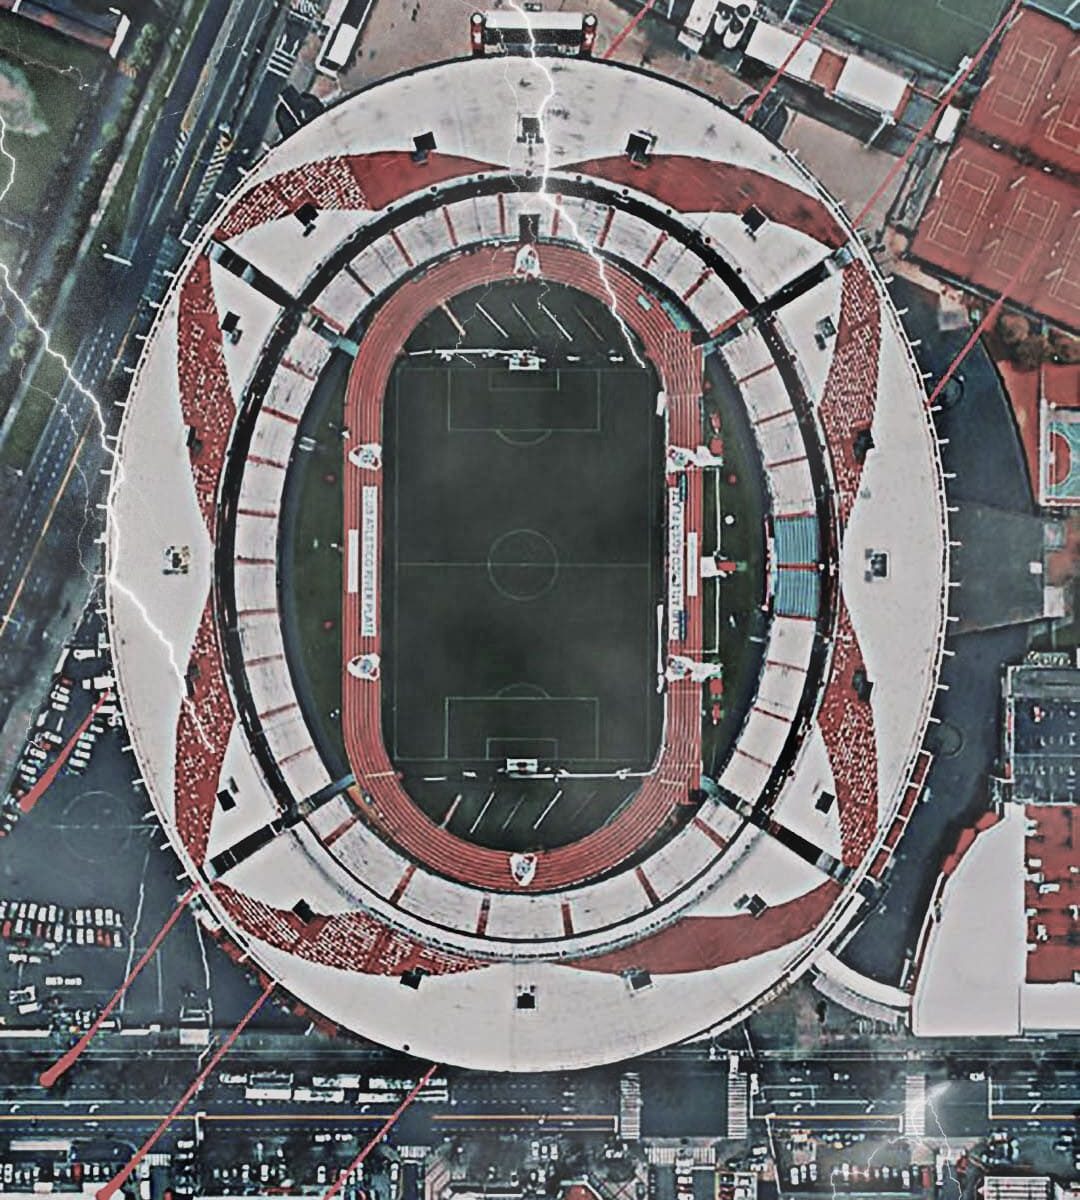 DESCARGA] Fondo de Pantalla Celular River Plate - Estadio Monumental -  Tormenta